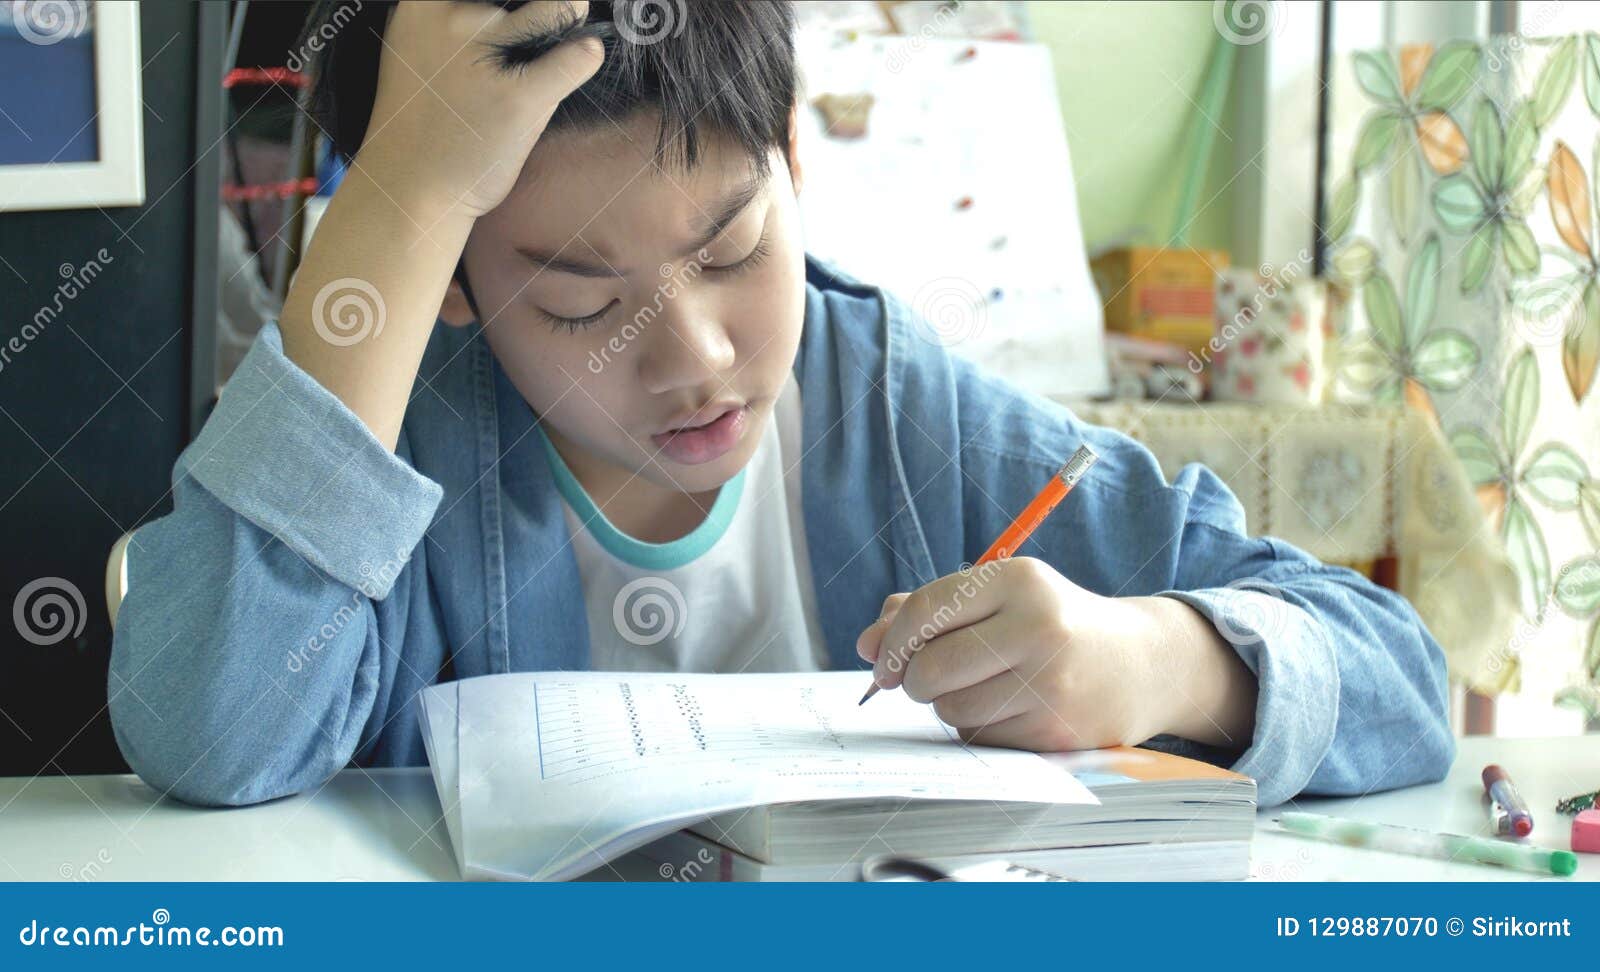 chinese children doing homework